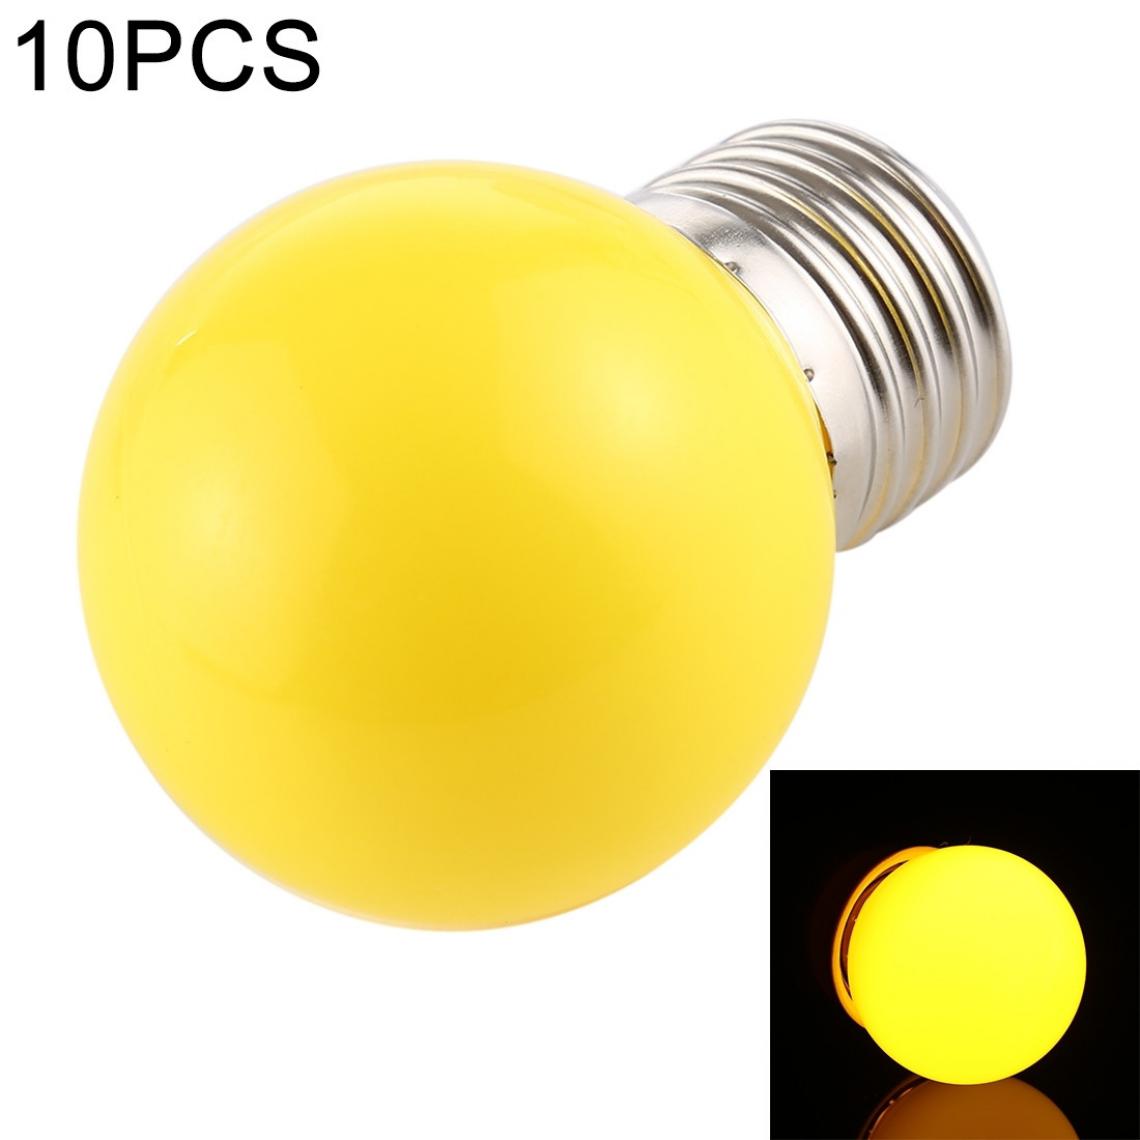 Wewoo - 10 PCS 2W E27 2835 SMD décoration de la maison ampoules LEDAC 110V lumière jaune - Ampoules LED